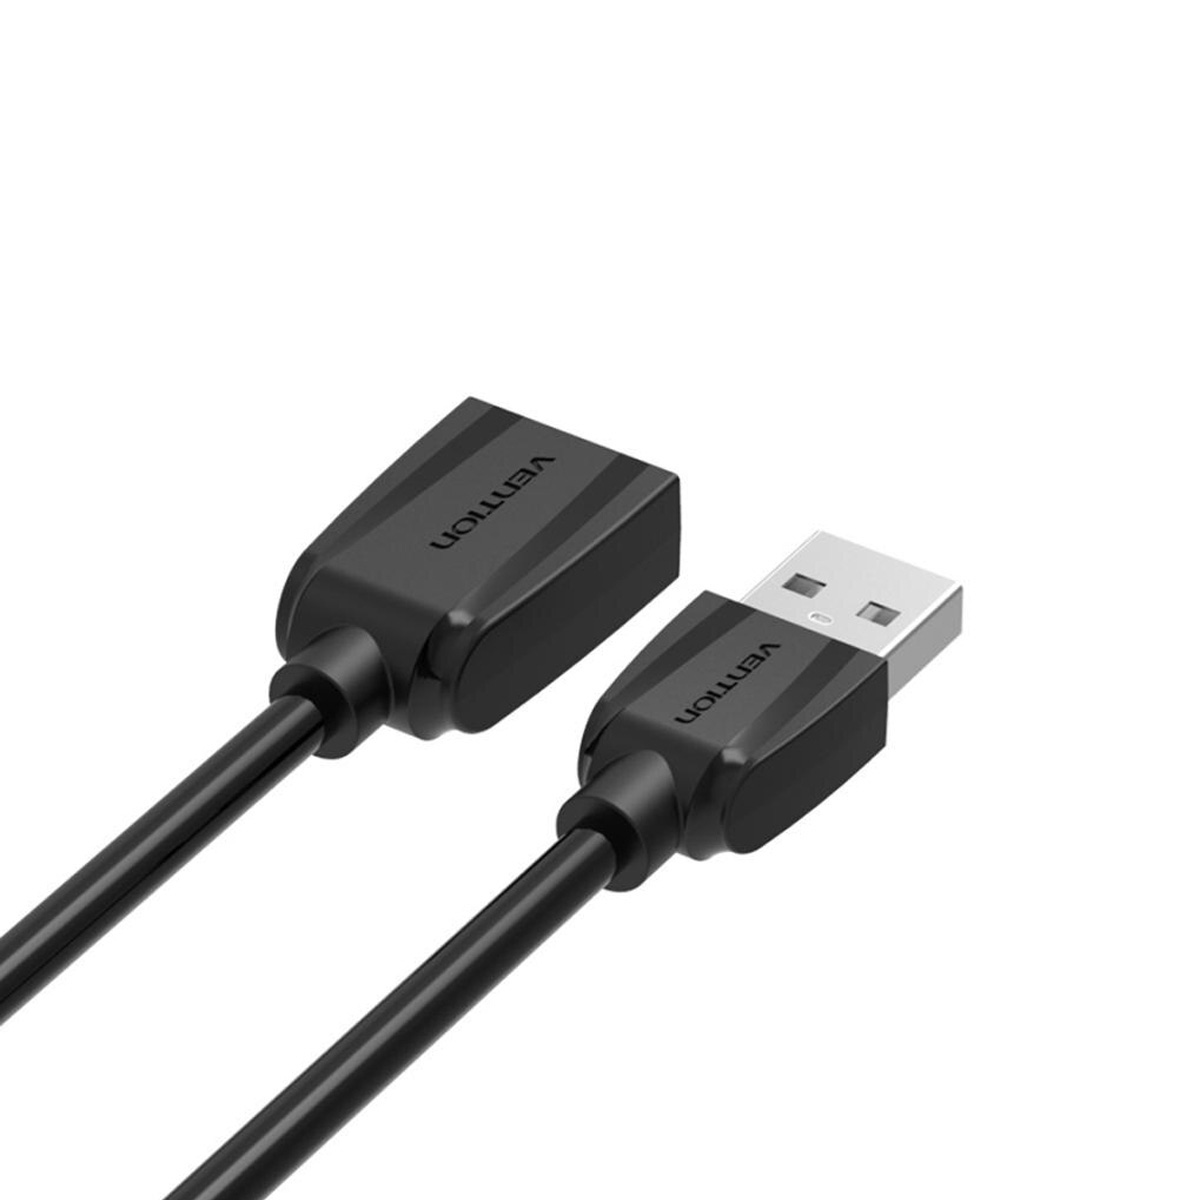 Cáp USB 2.0 nối dài 1.5m Vention VAS-A44-B150 Black